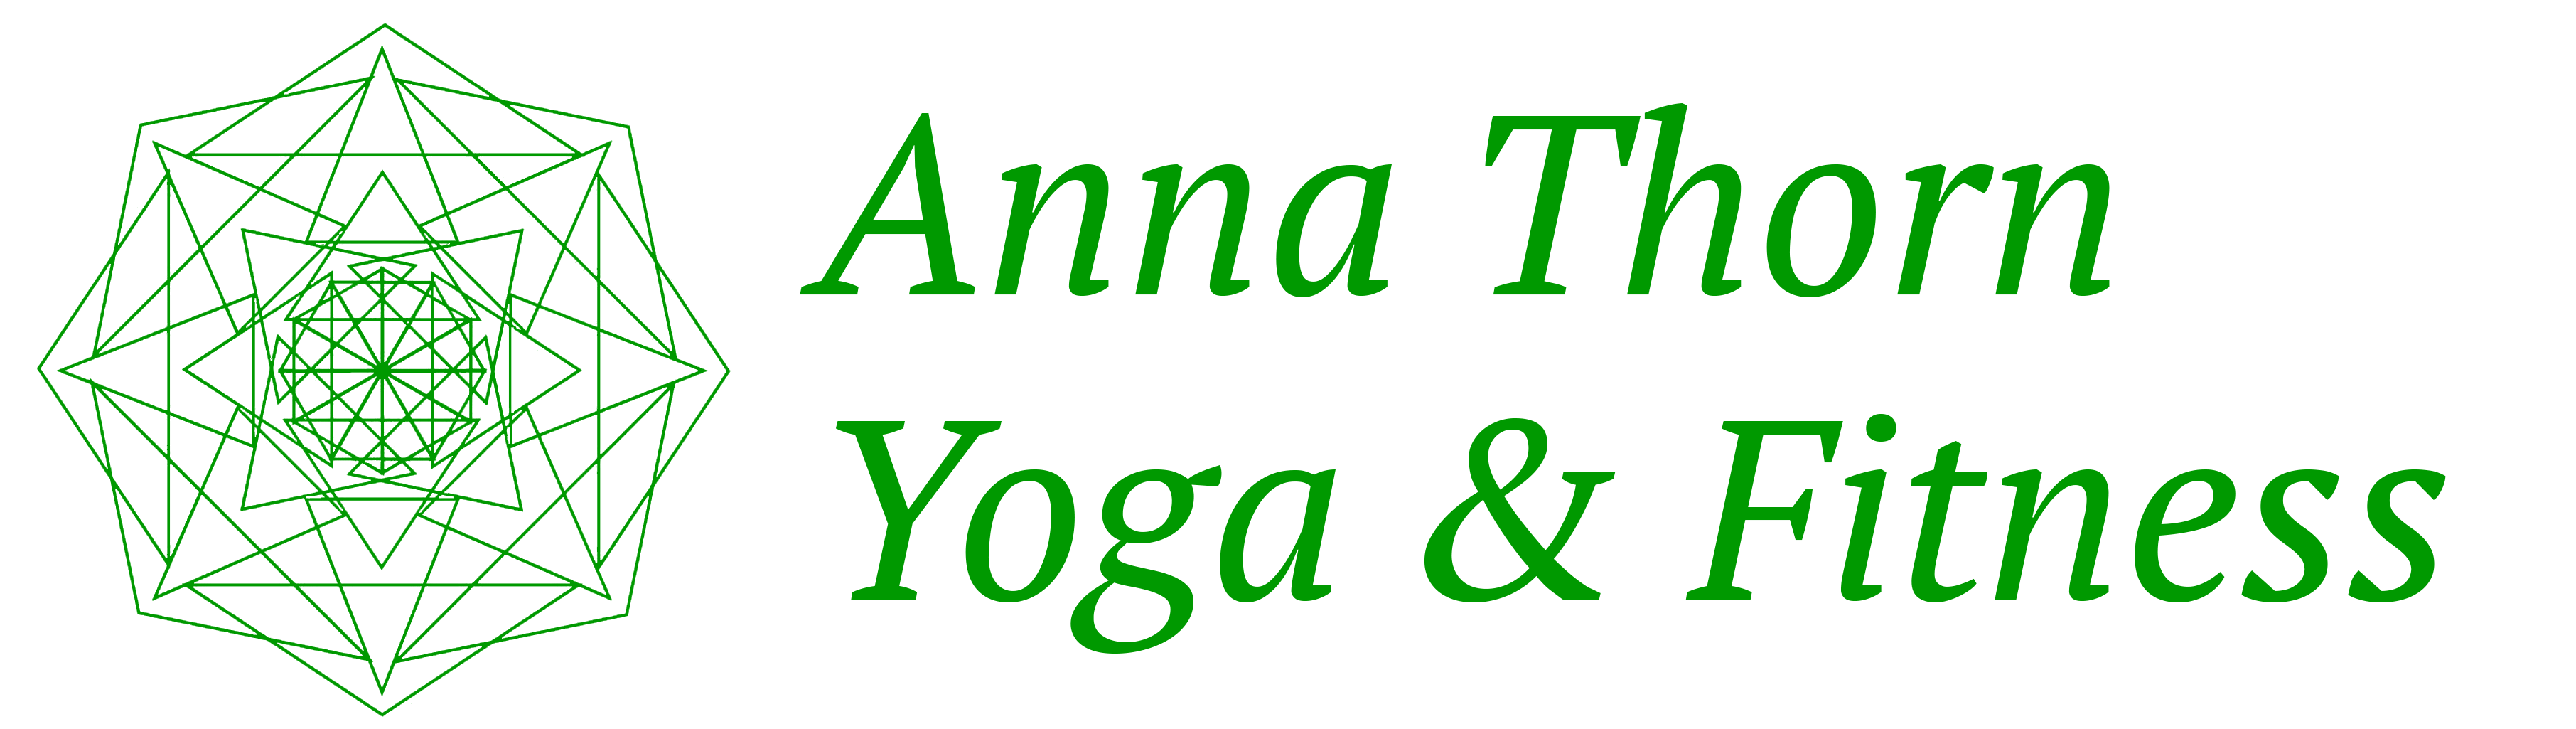 Anna Thorn Yoga